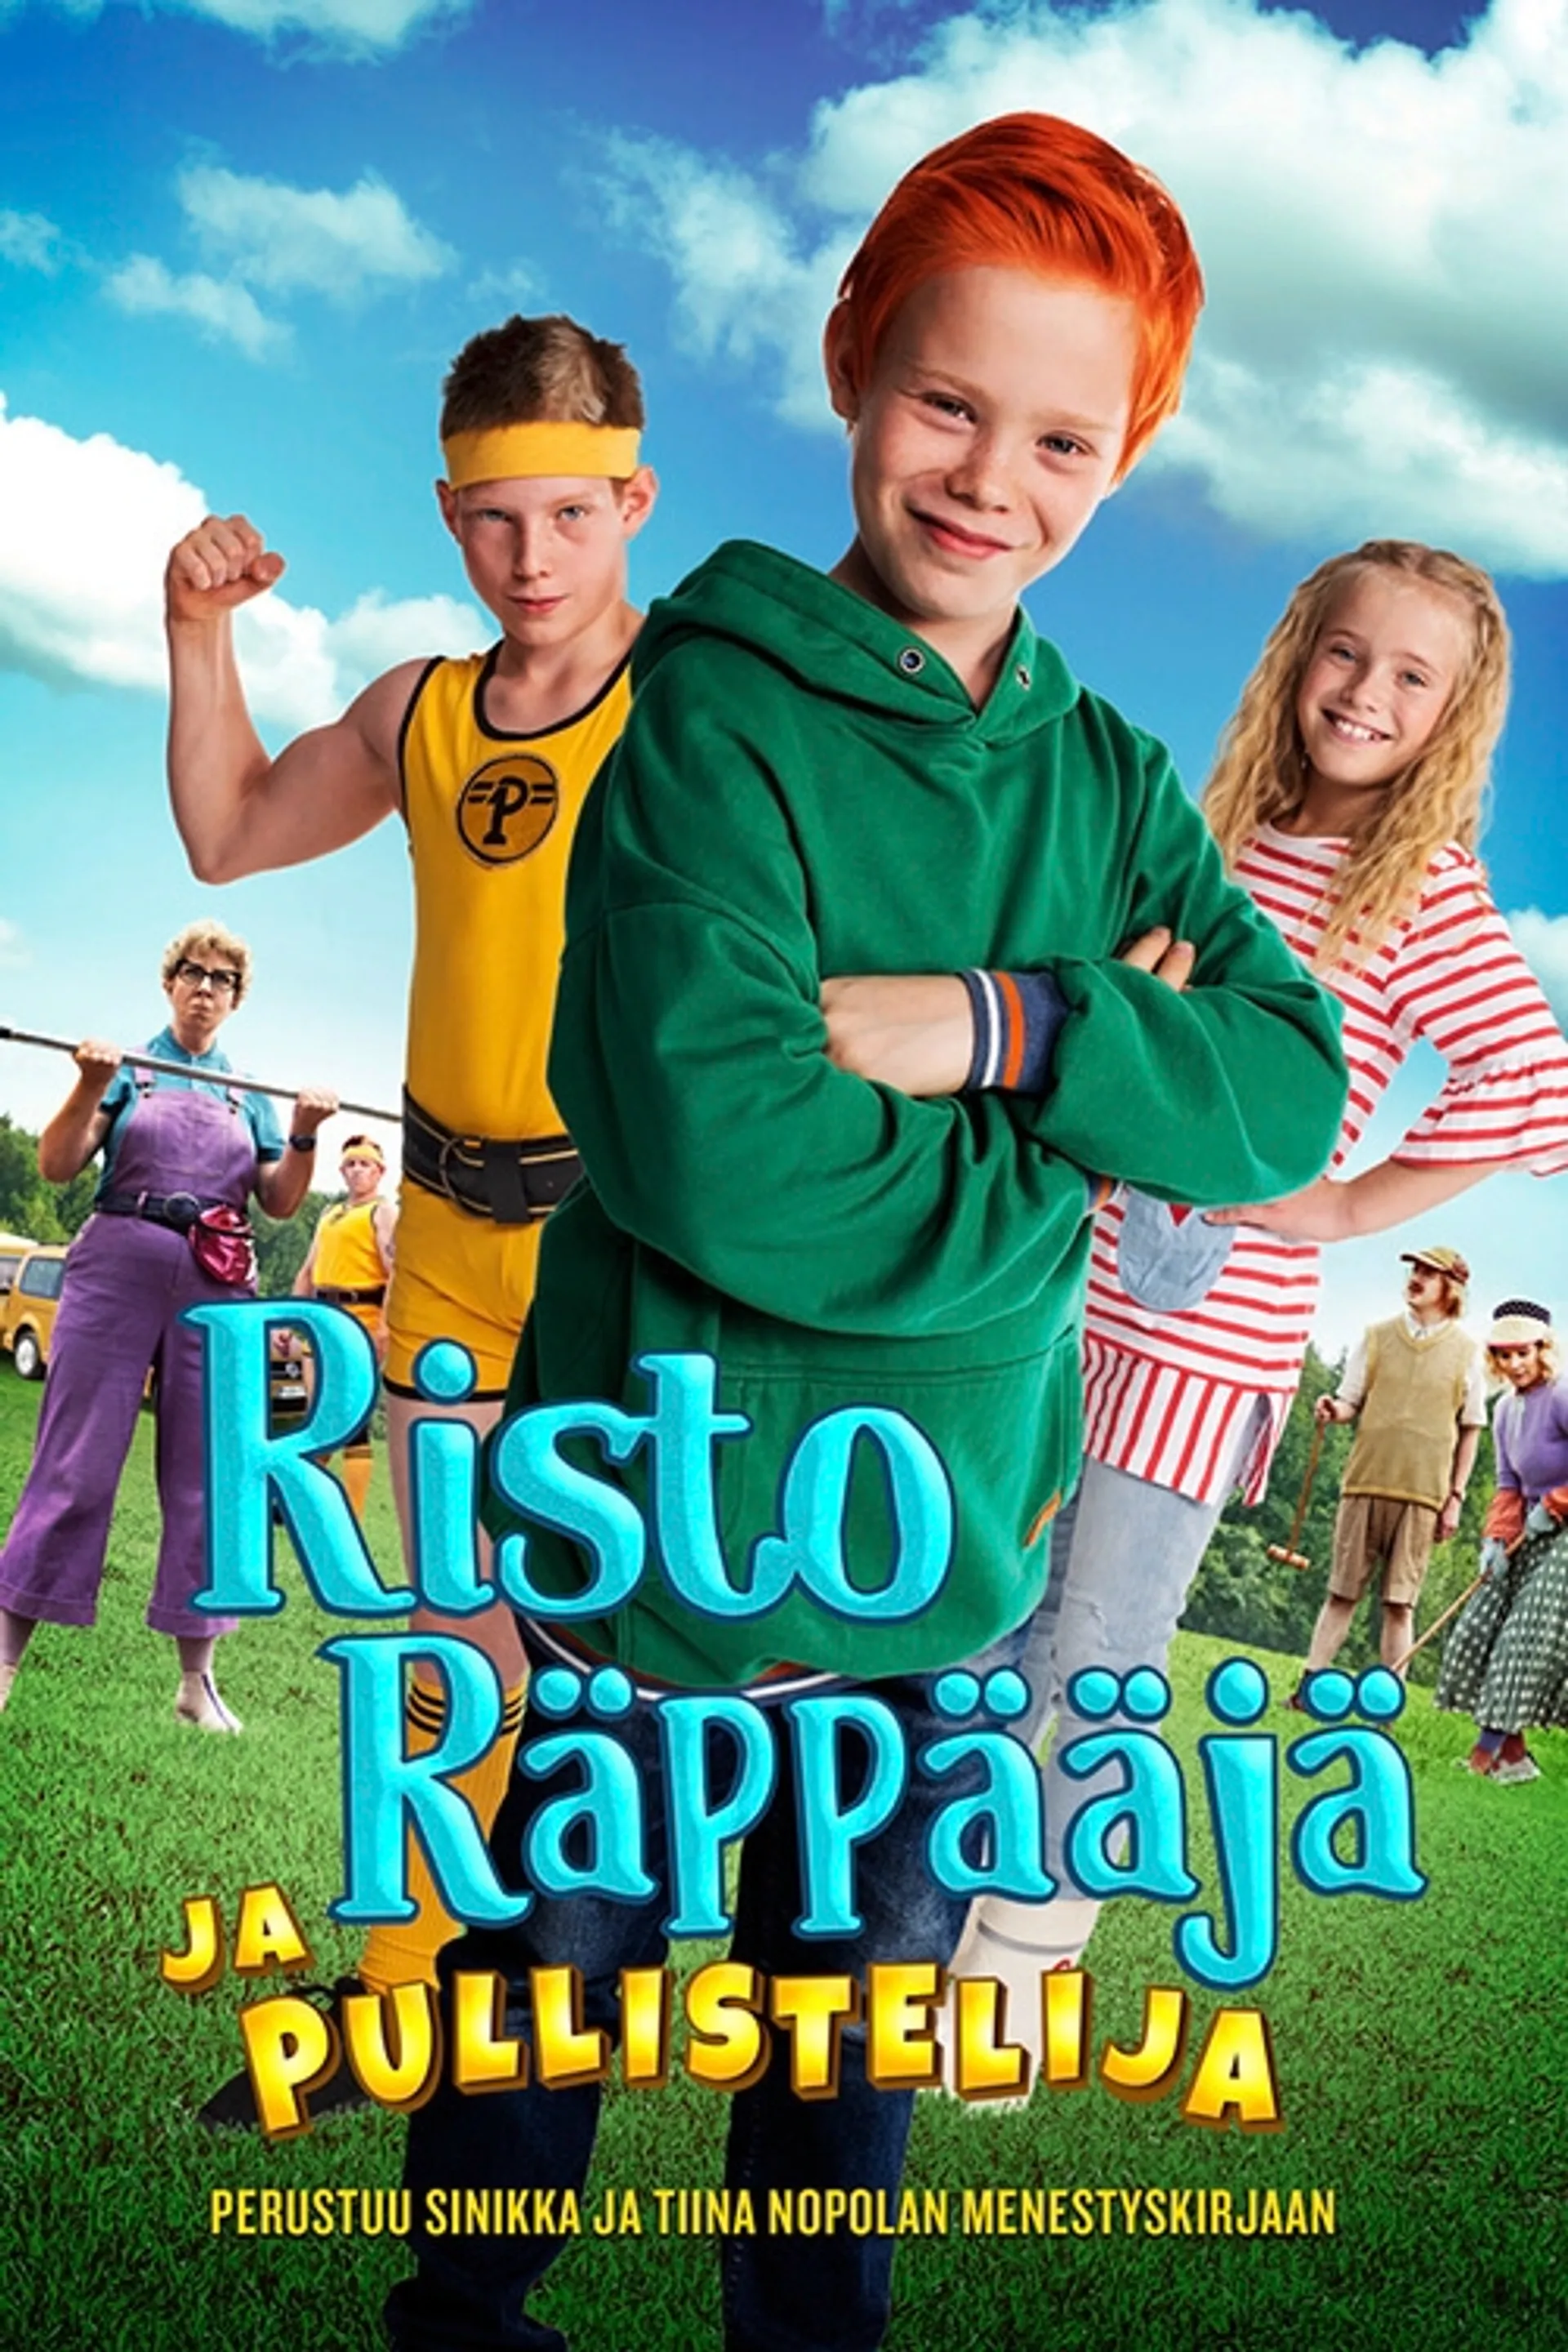 Risto Räppääjä ja Pullistelija Blu-ray